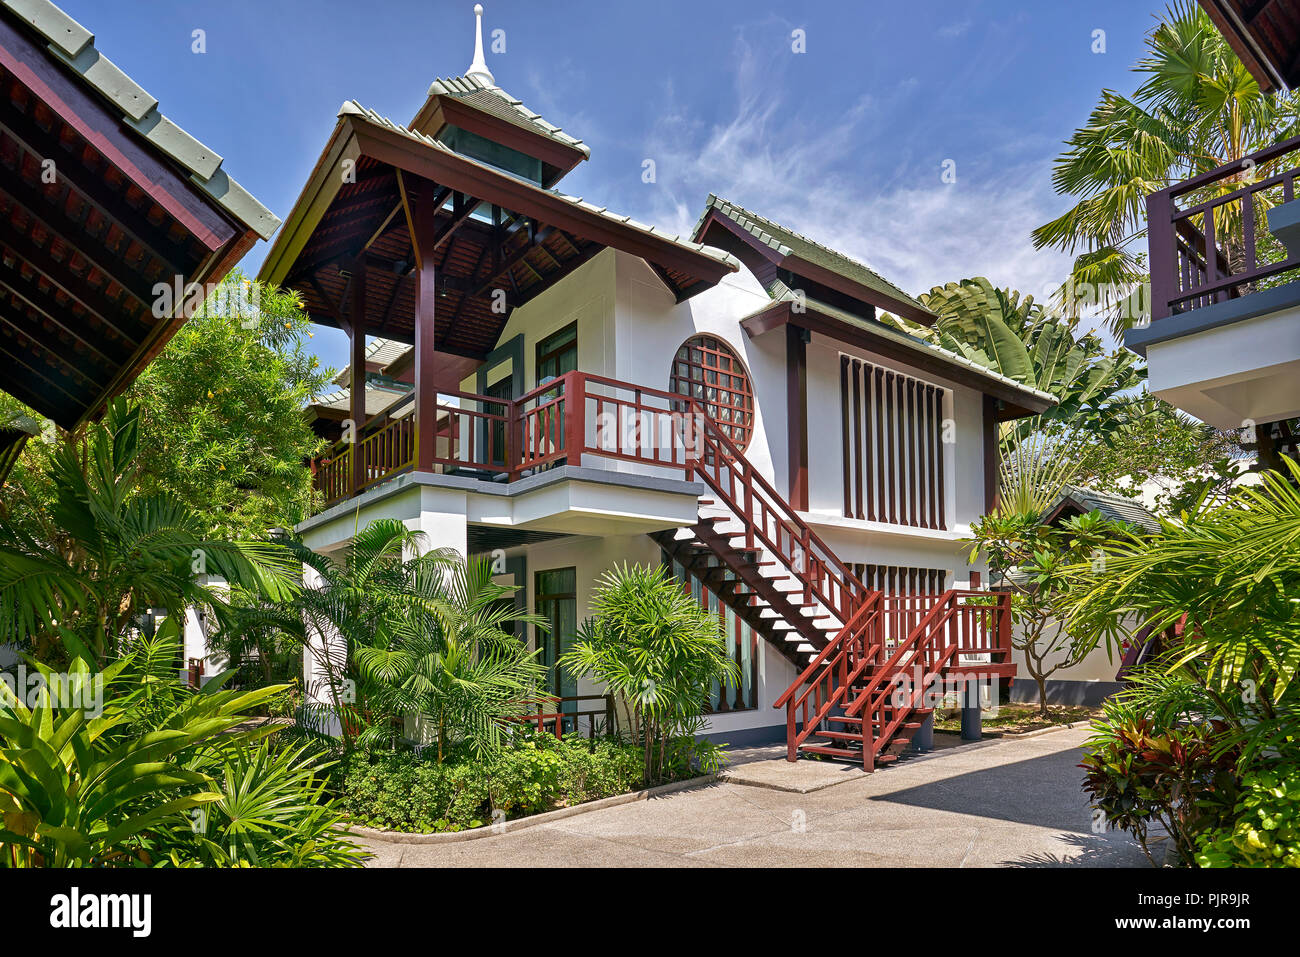 Thailandia casa tradizionale architettura tailandese. Sud-est asiatico Foto Stock